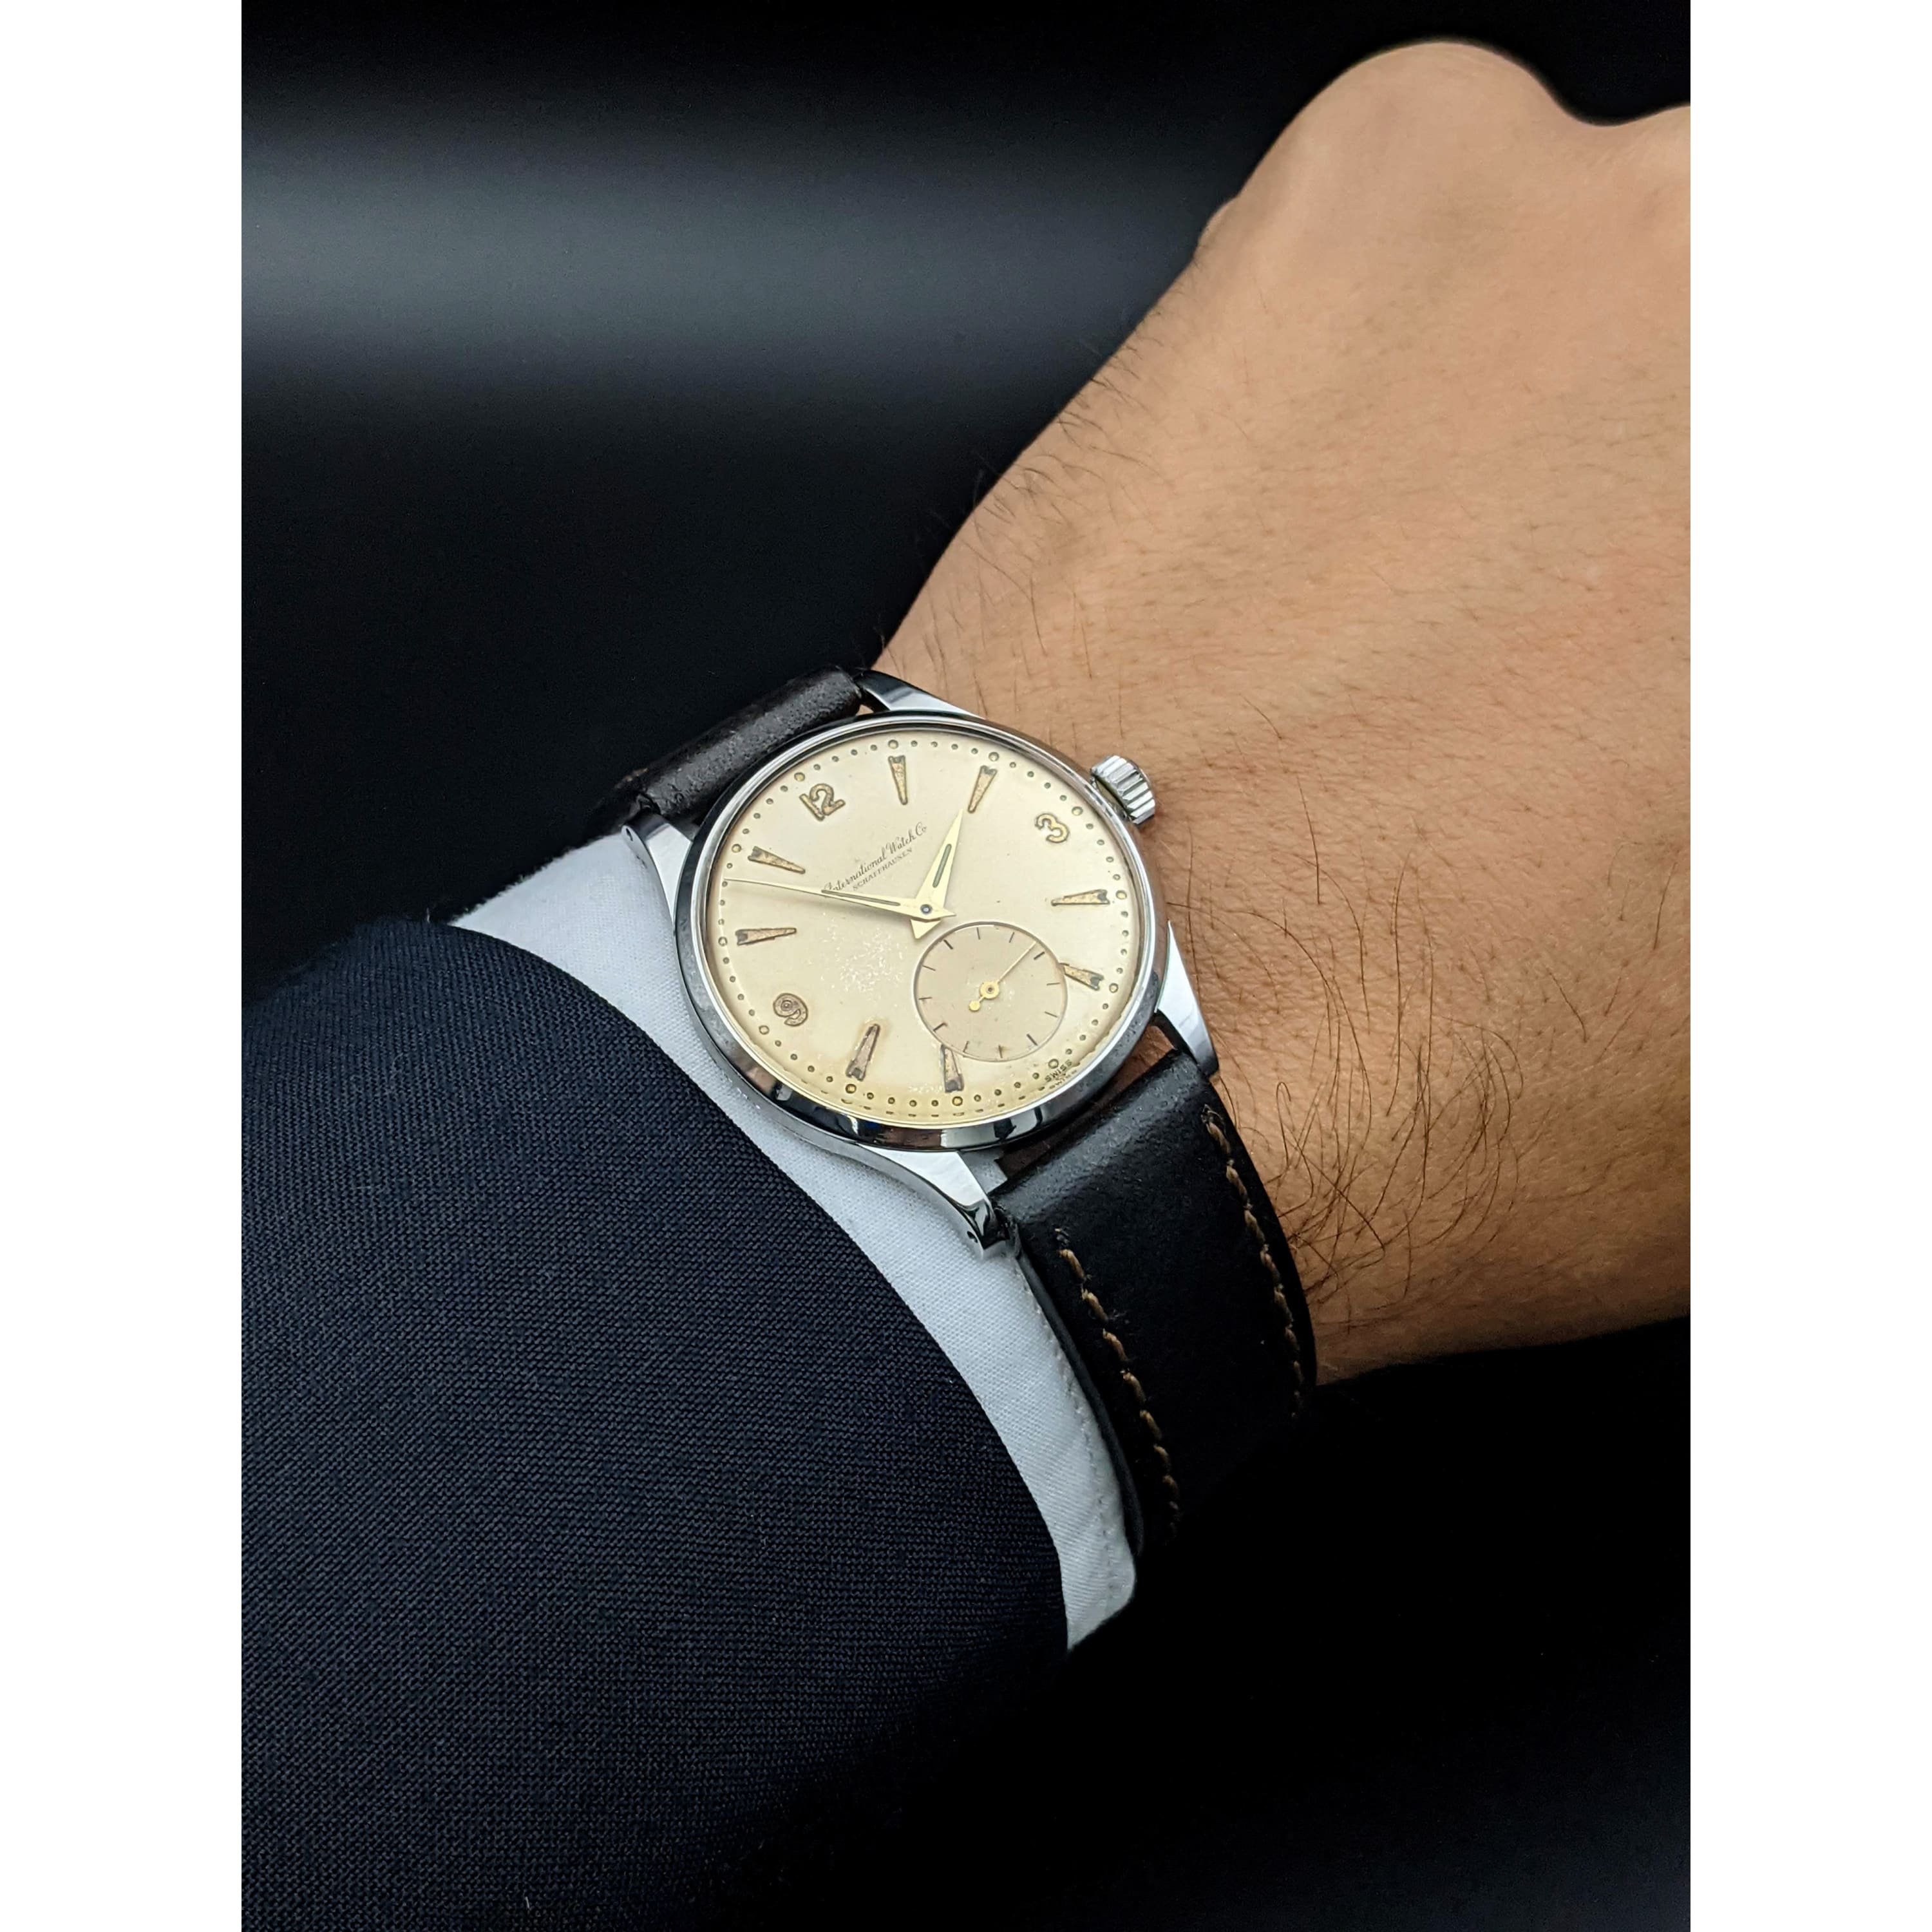 IWC Schaffhausen Vintage Watch– Omega Vintage Watches – Exclusive